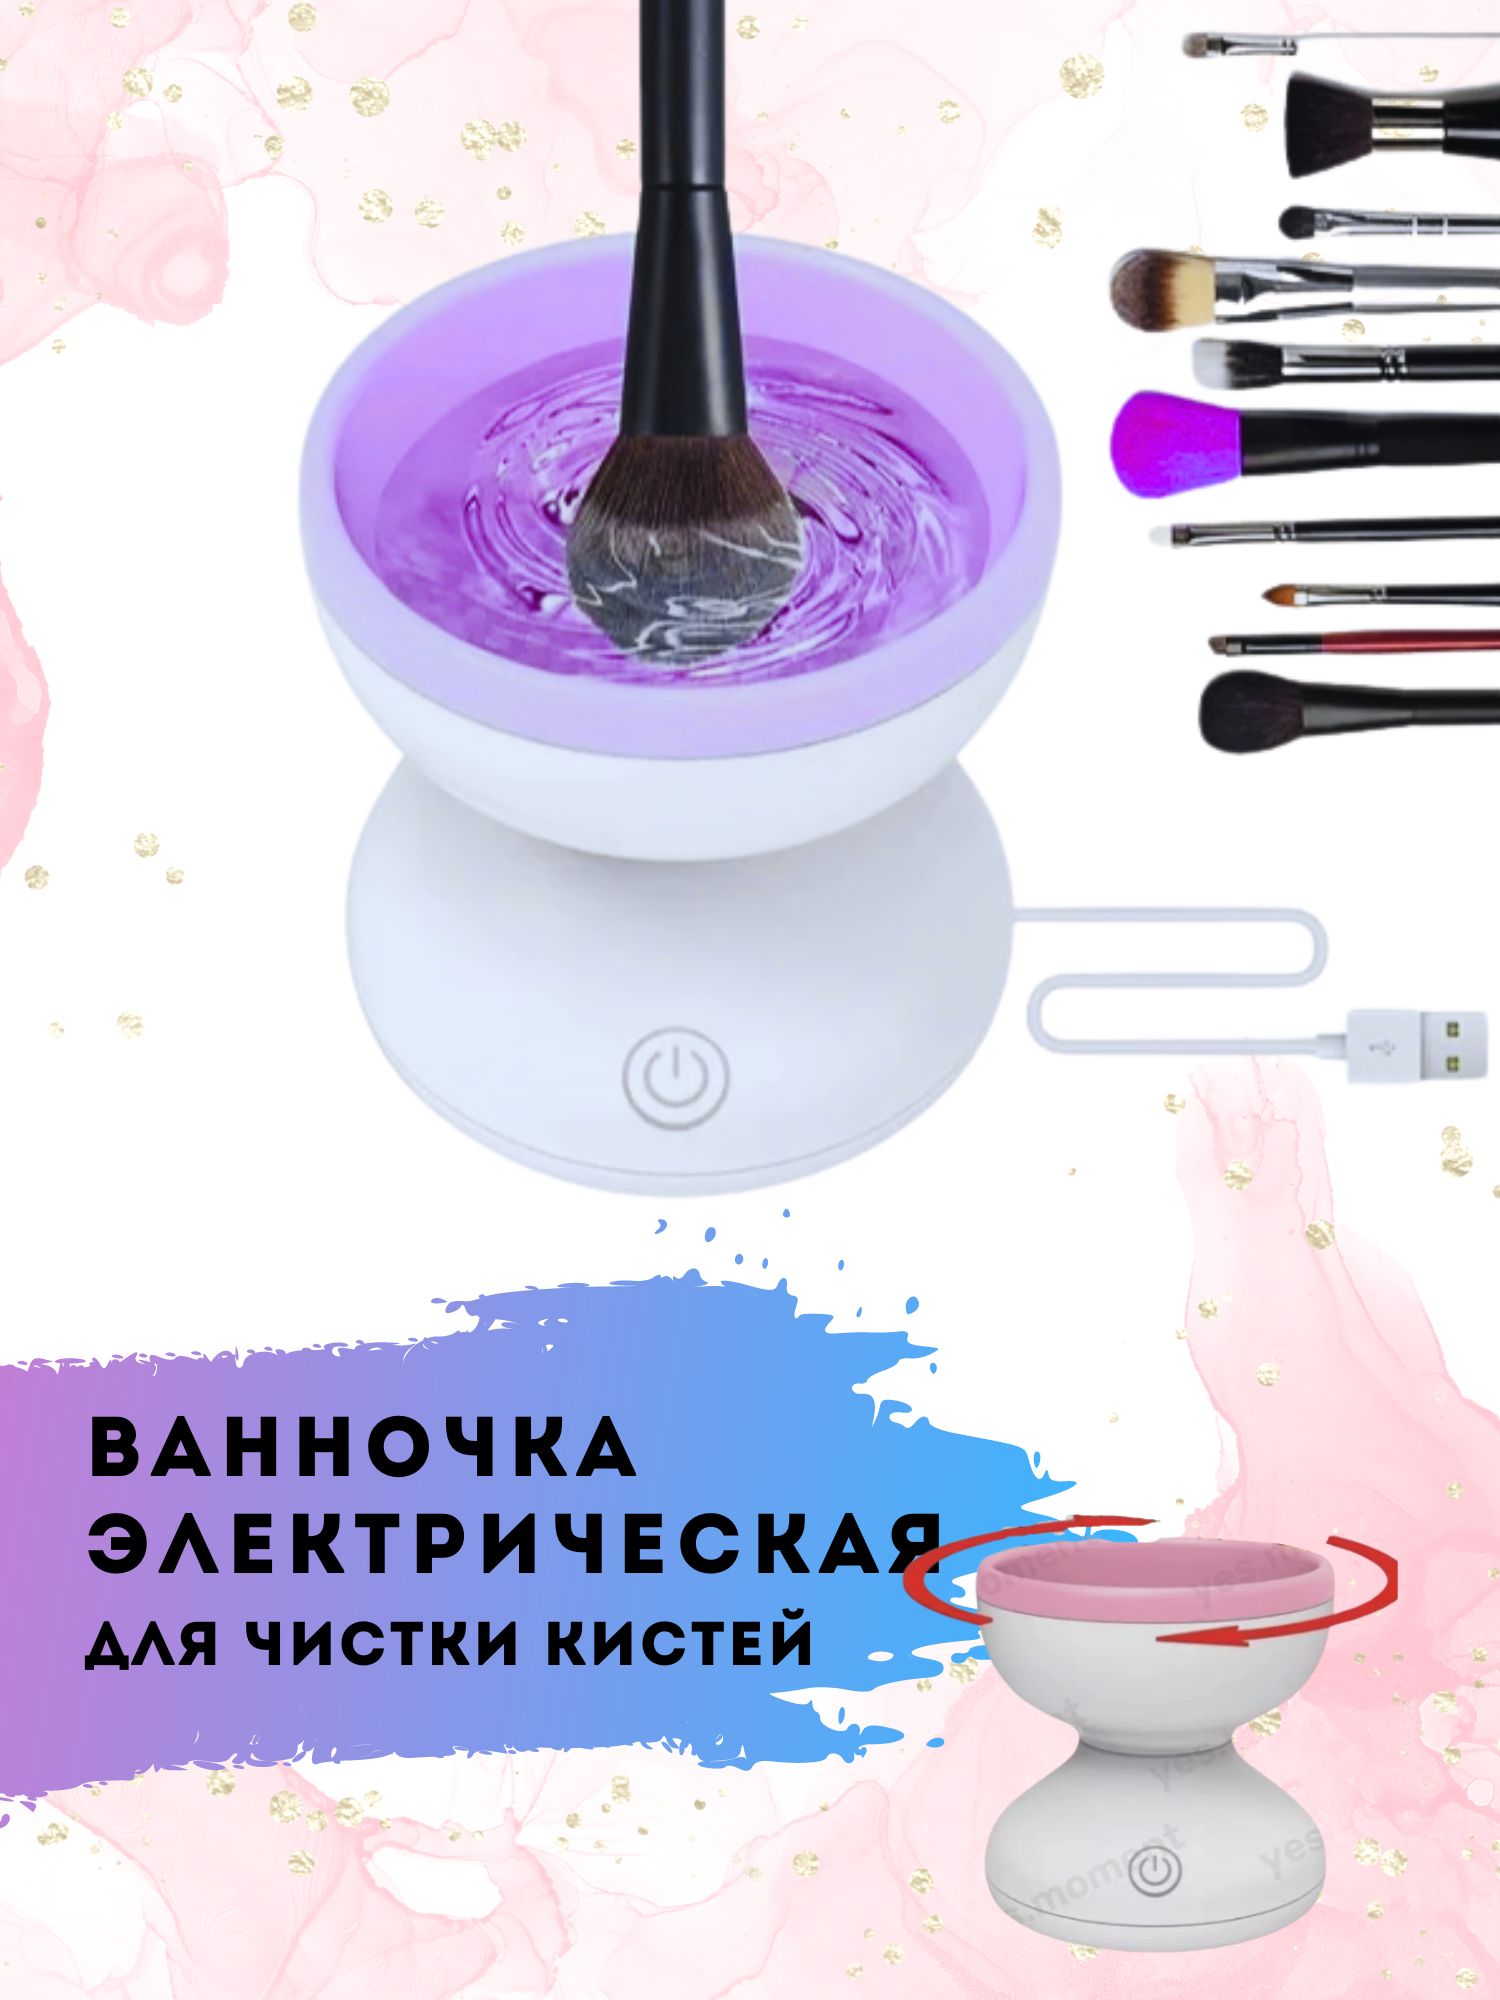 Очиститель для кистей XPX электрический фиолетовый диаметр 8.8 см автоматический очиститель кистей для макияжа с функцией сушки